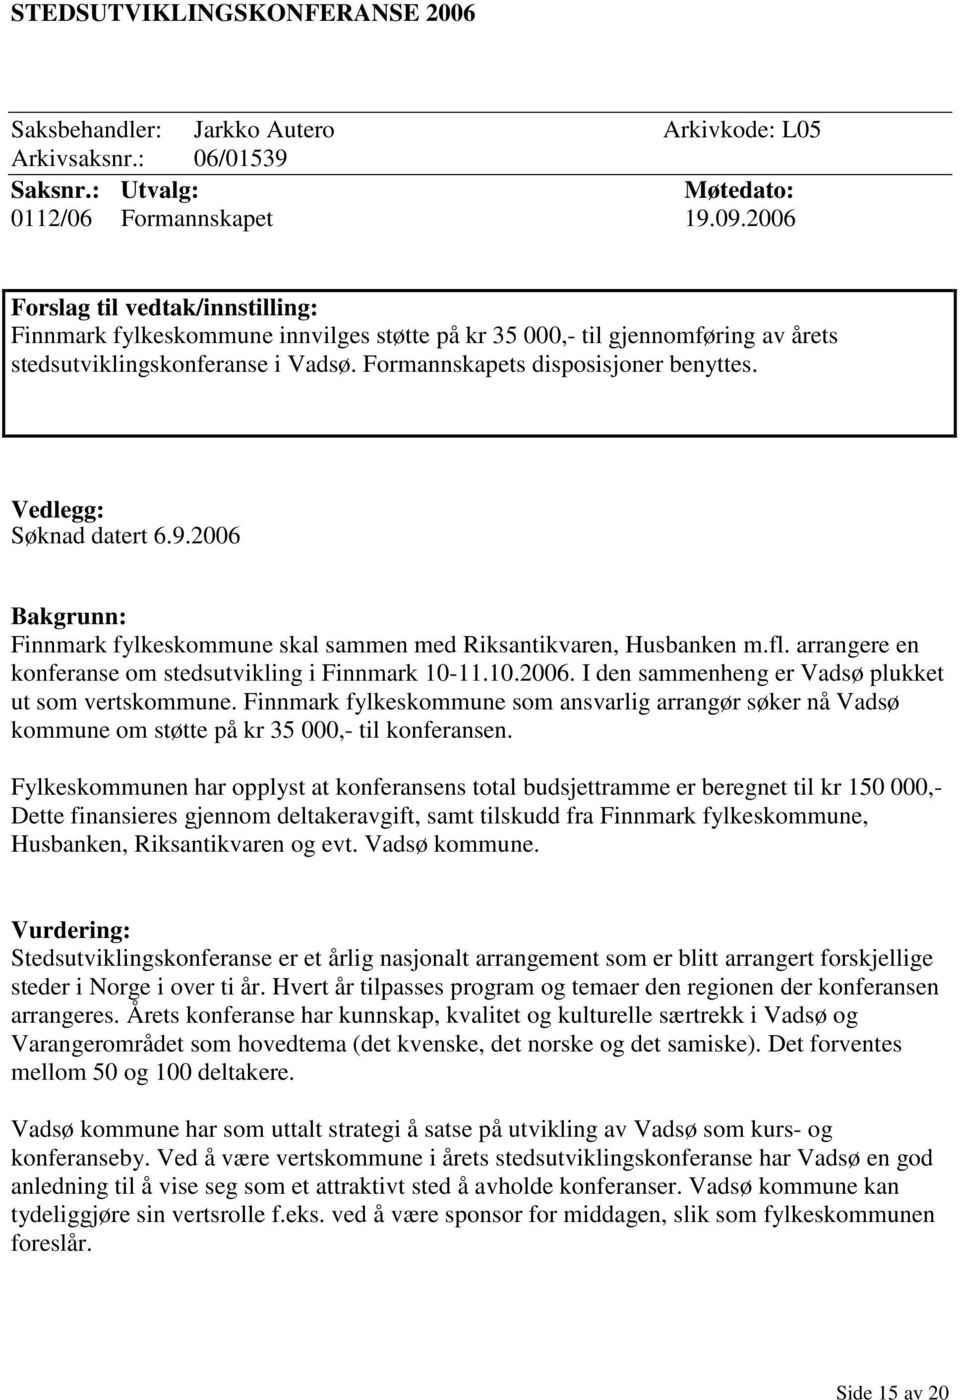 Vedlegg: Søknad datert 6.9.2006 Bakgrunn: Finnmark fylkeskommune skal sammen med Riksantikvaren, Husbanken m.fl. arrangere en konferanse om stedsutvikling i Finnmark 10-11.10.2006. I den sammenheng er Vadsø plukket ut som vertskommune.